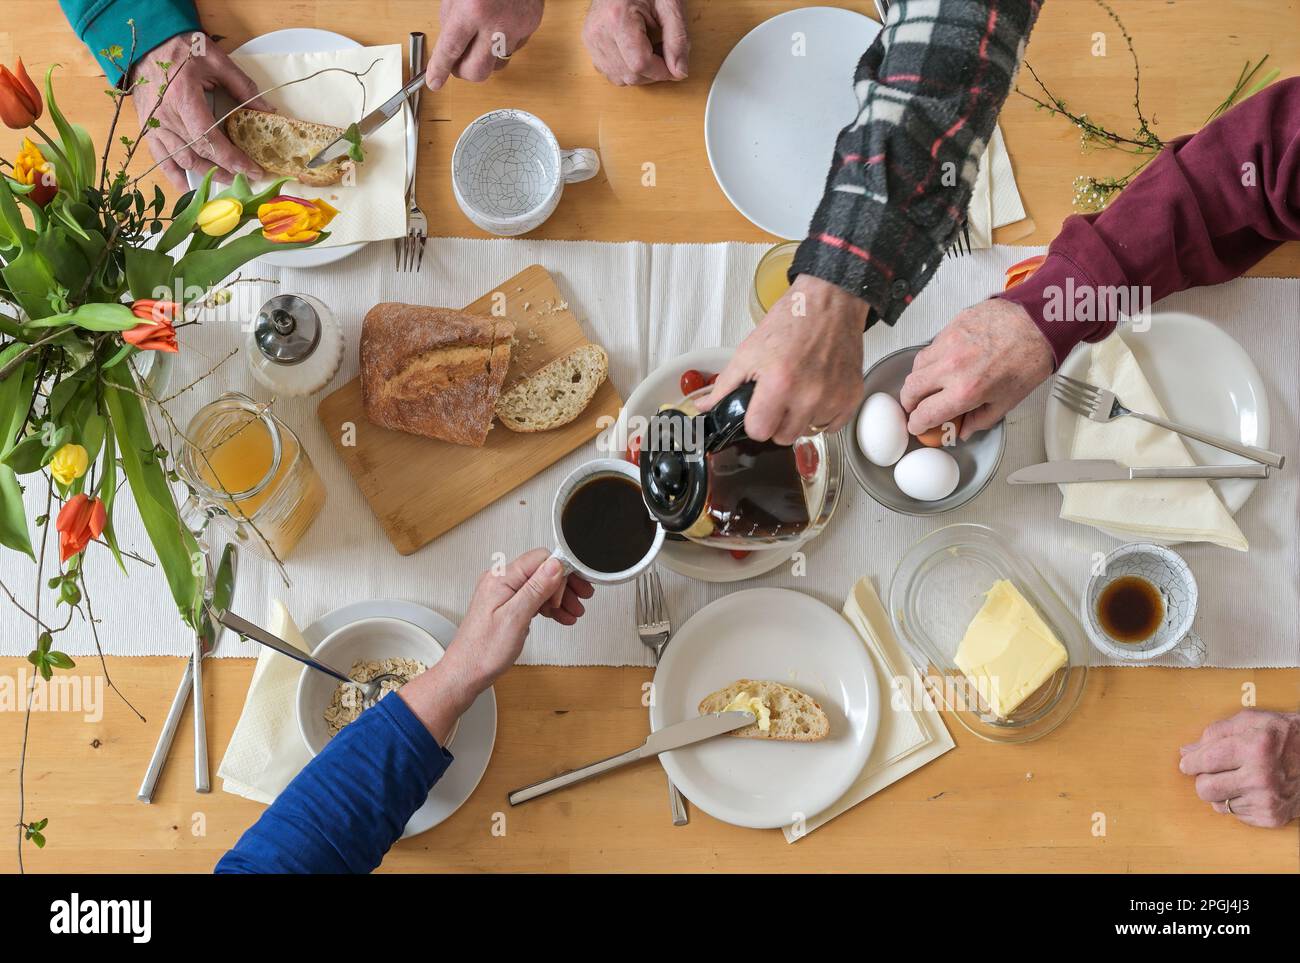 Vue de dessus sur un groupe de personnes assis sur une table en bois et de prendre le petit déjeuner avec café, pain, oeufs, beurre et quelques fleurs de printemps, haut A. Banque D'Images